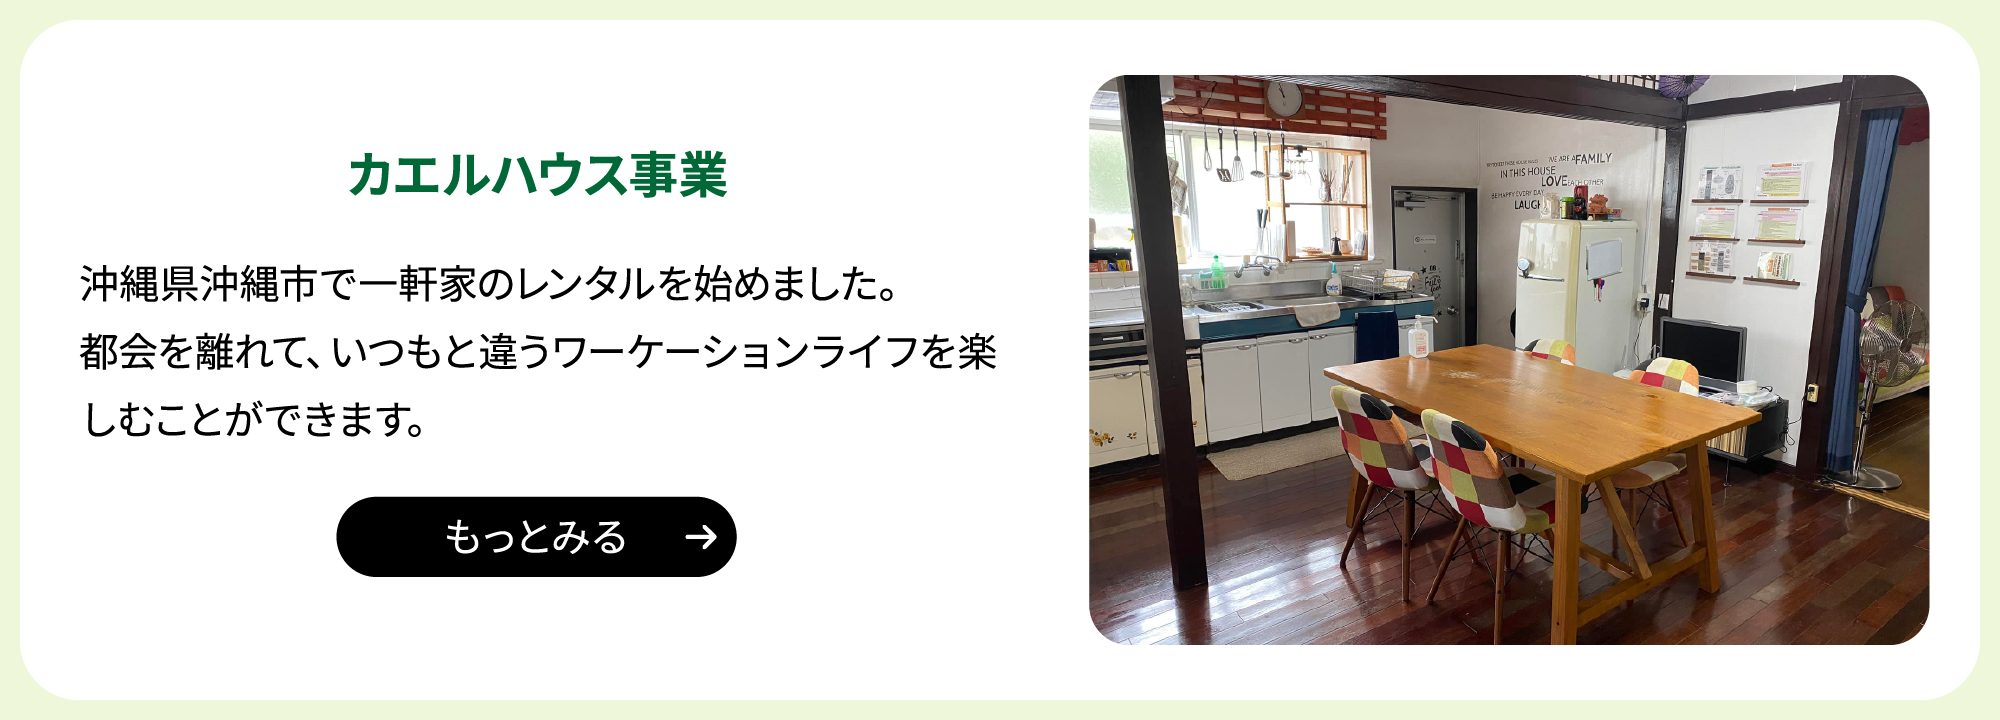 hover後:カエルハウス事業 沖縄県沖縄市で一軒家のレンタルを始めました。都会を離れて、いつもと違うワーケーションライフを楽しむことができます。